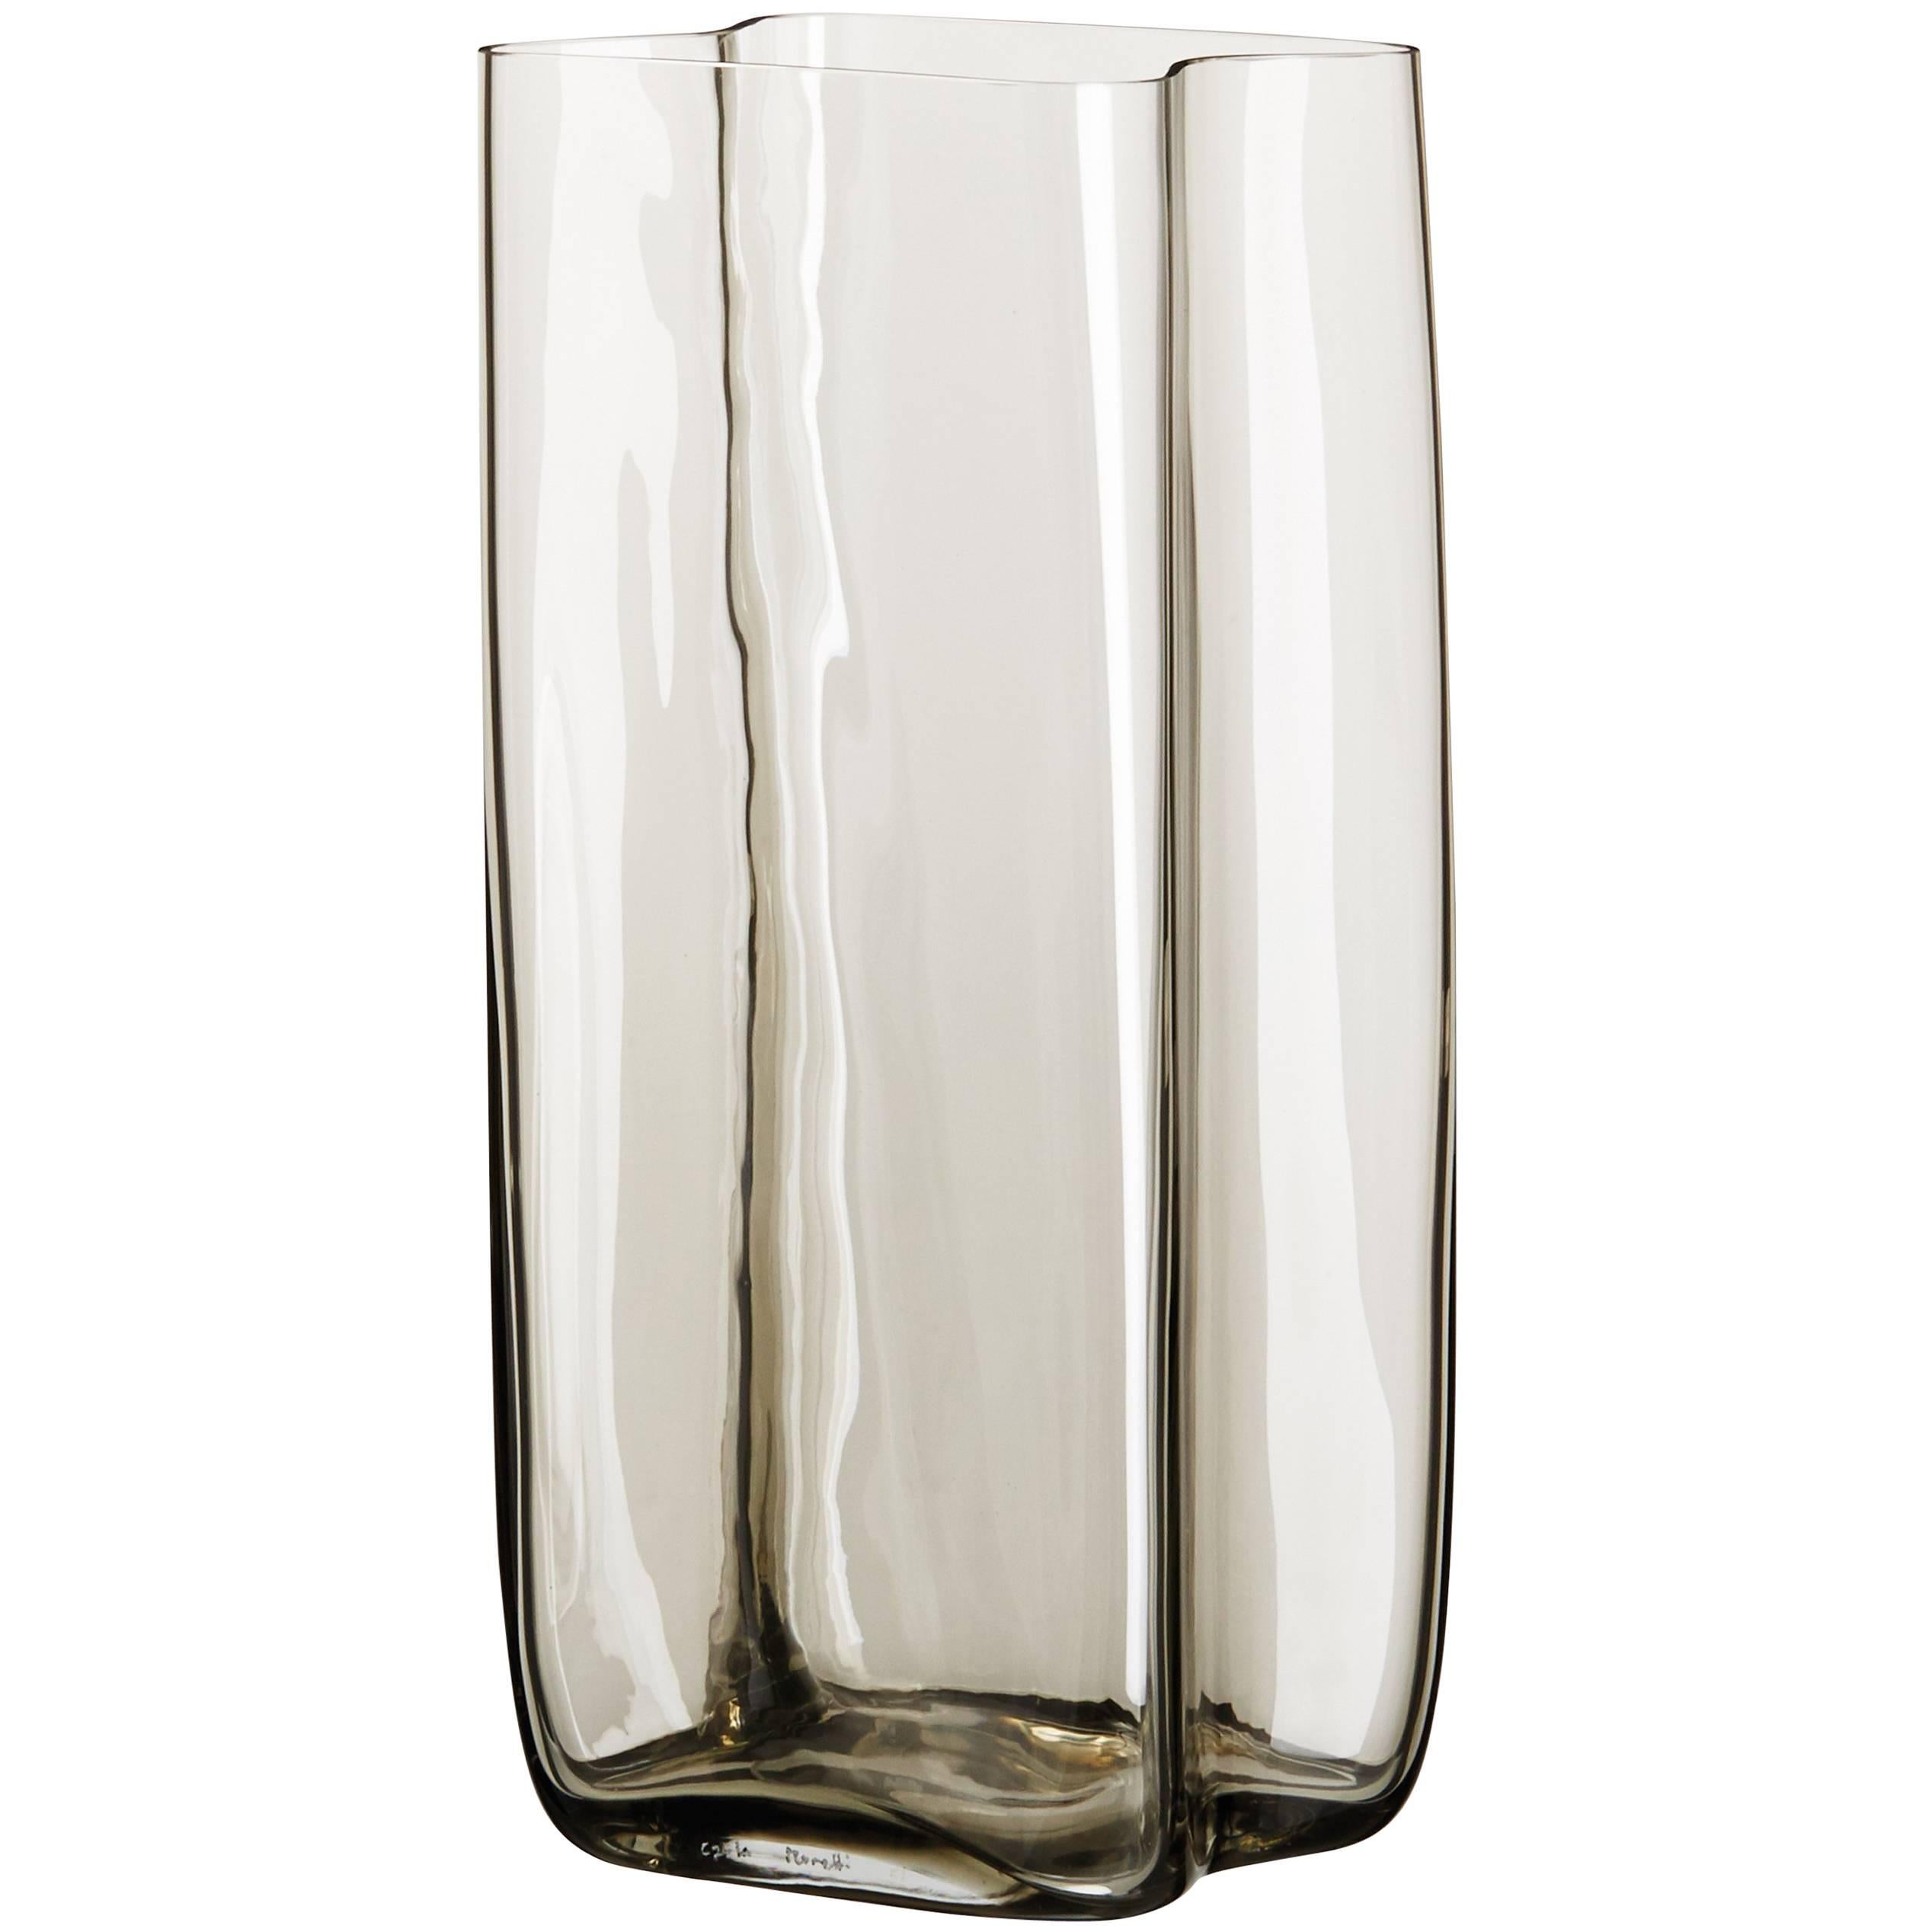 Bosco Carlo Moretti Contemporary Mouth Blown Murano Glass Vase in Clear Beige